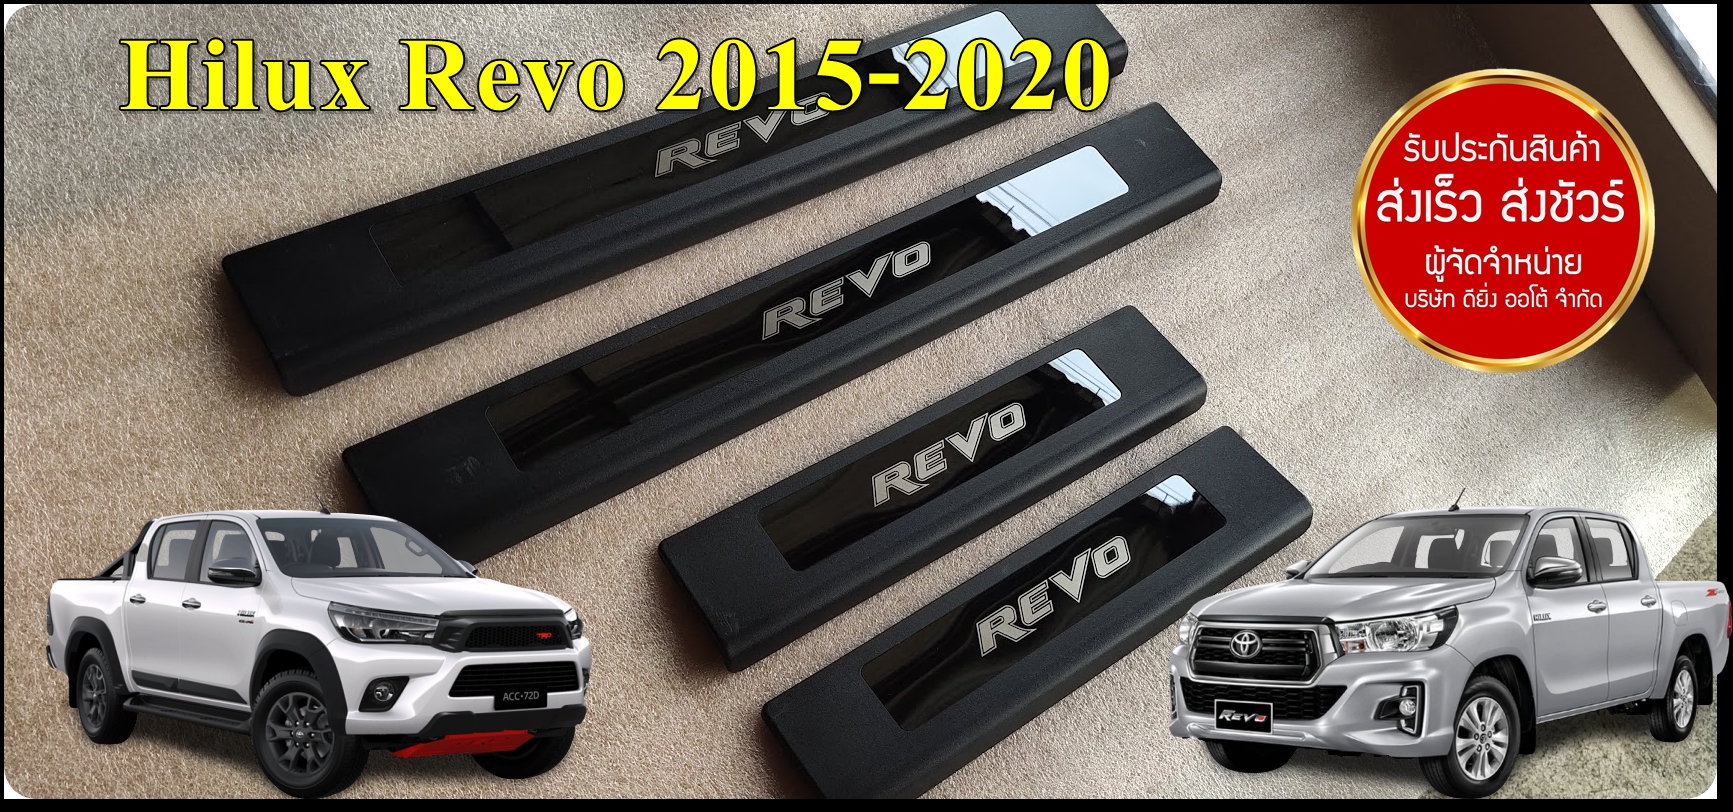 ชายบันได  สคัพเพลท  Hilux Revo ปี 2015-2020 4ประตู แบบครอบเต็ม พลาสติกดำ